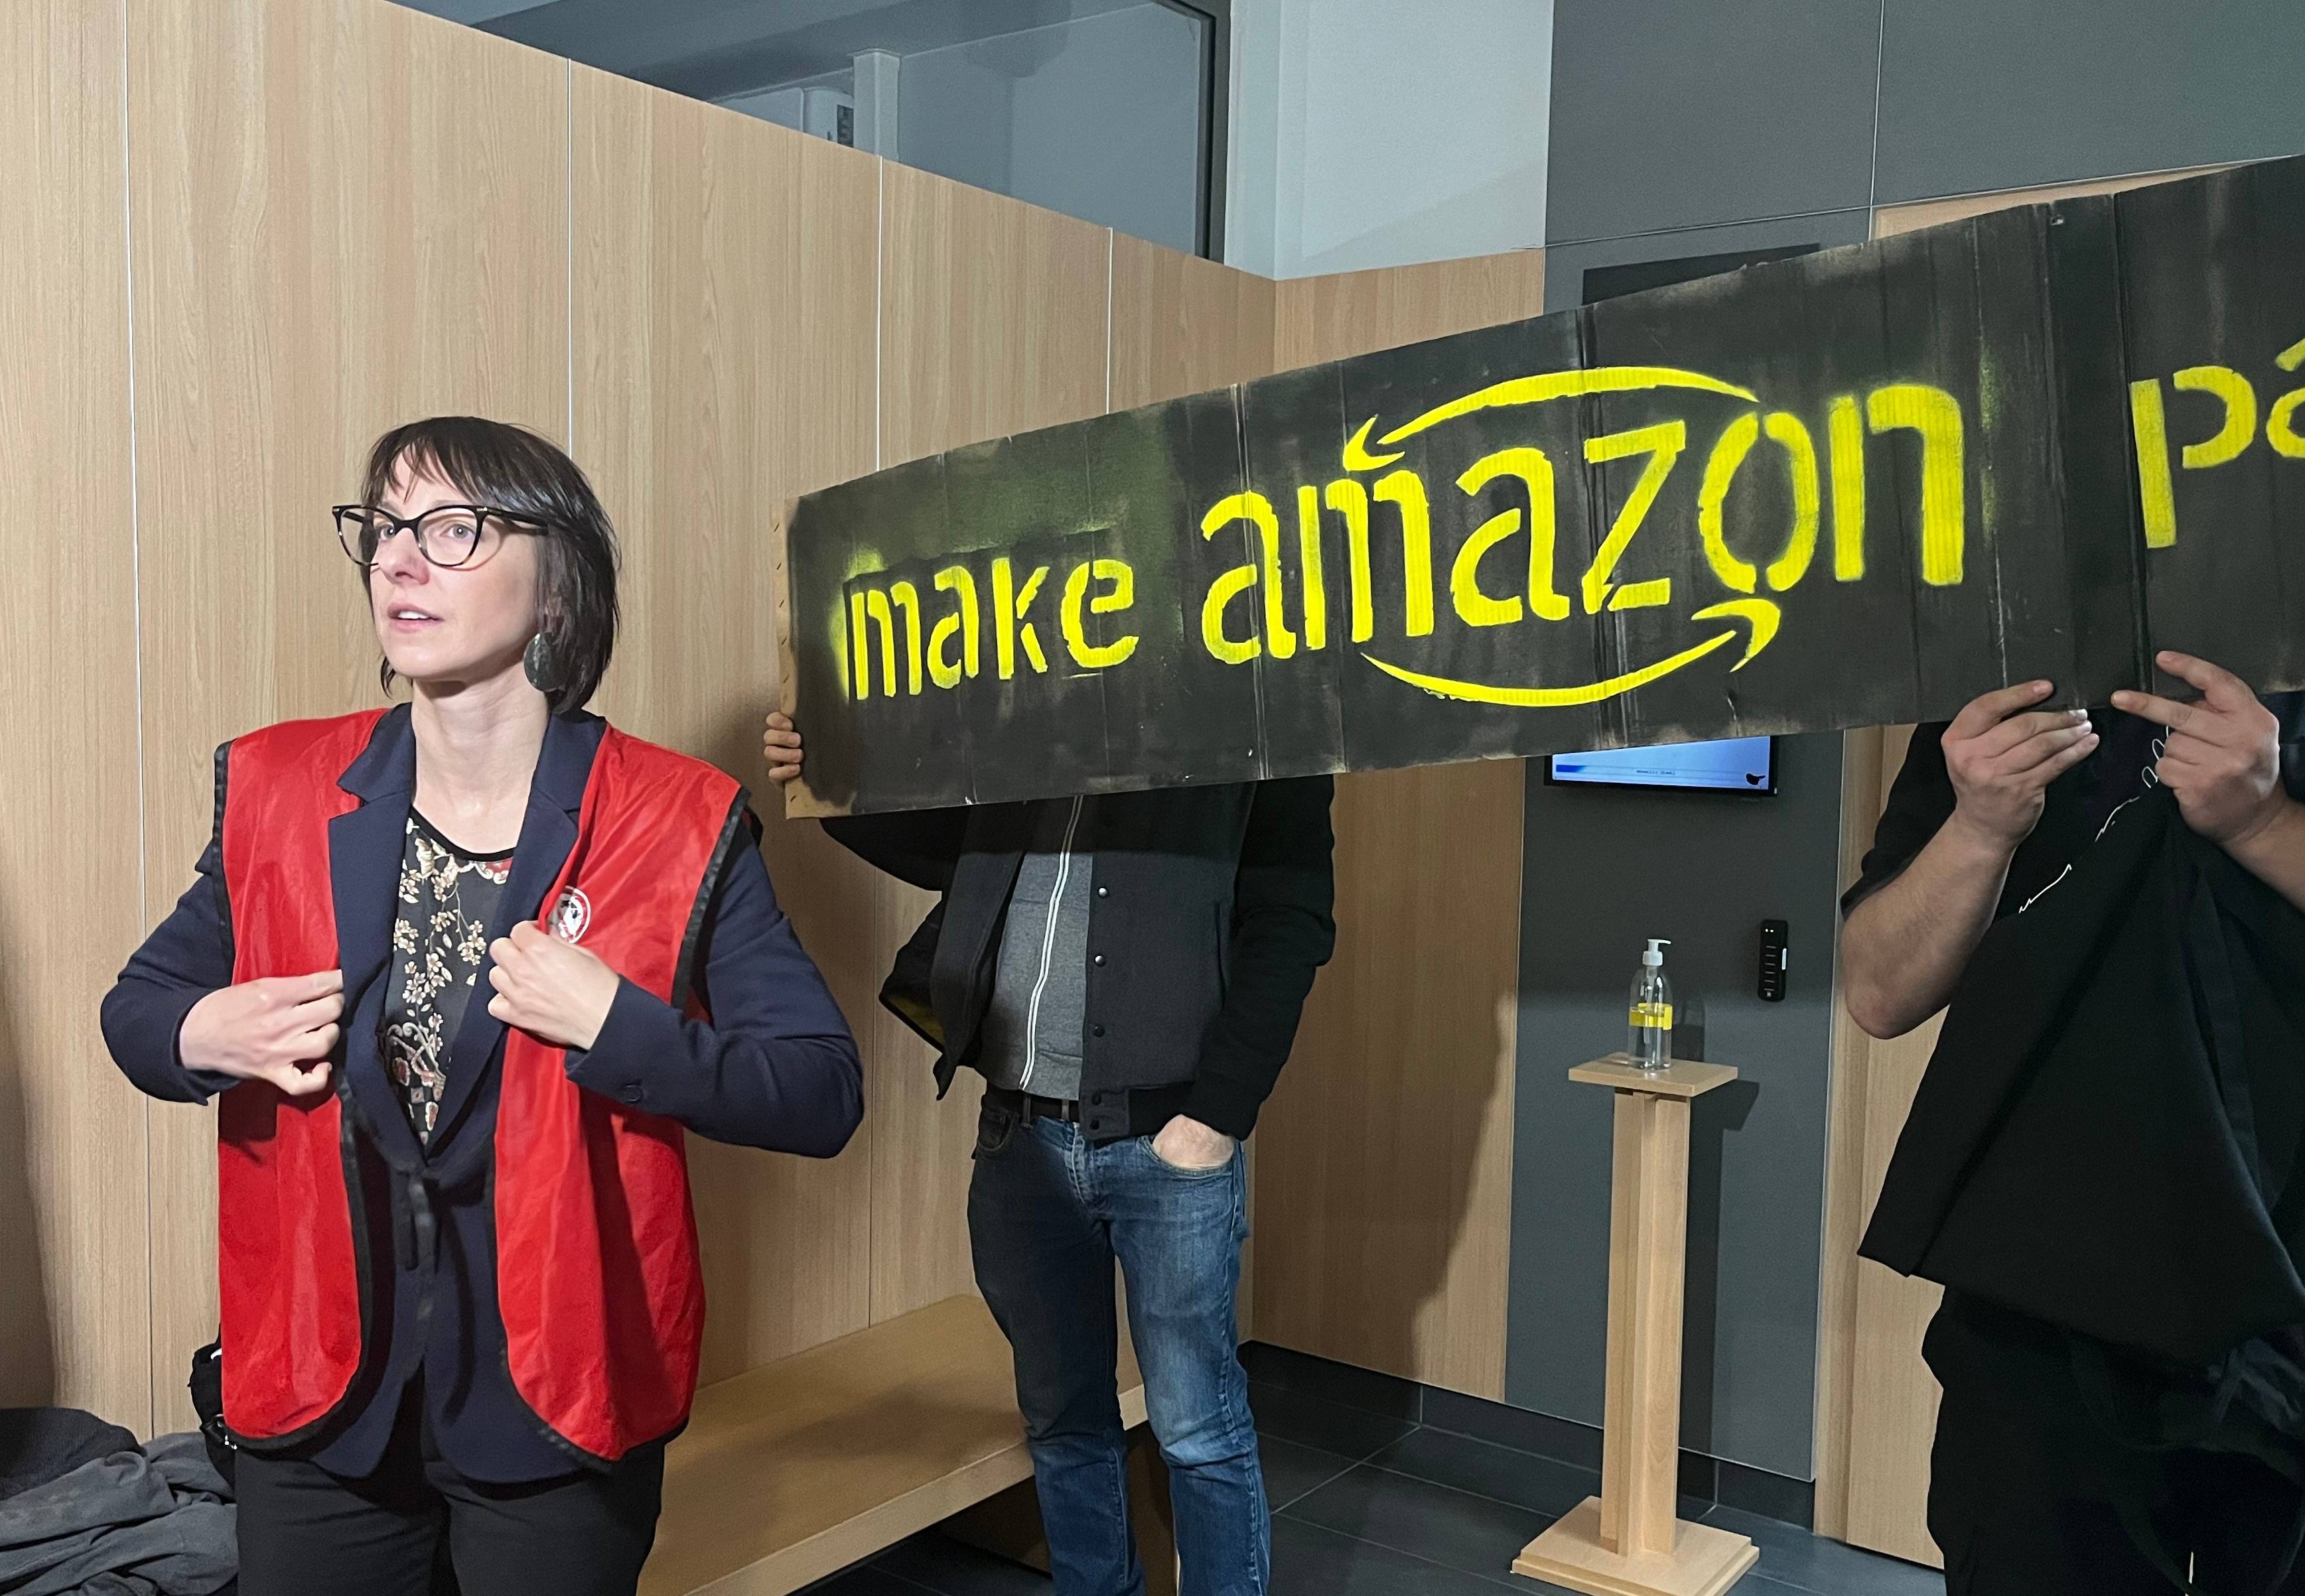 Kobieta w czerwonej kamizelce na tle transparentu "Make Amazon pay"